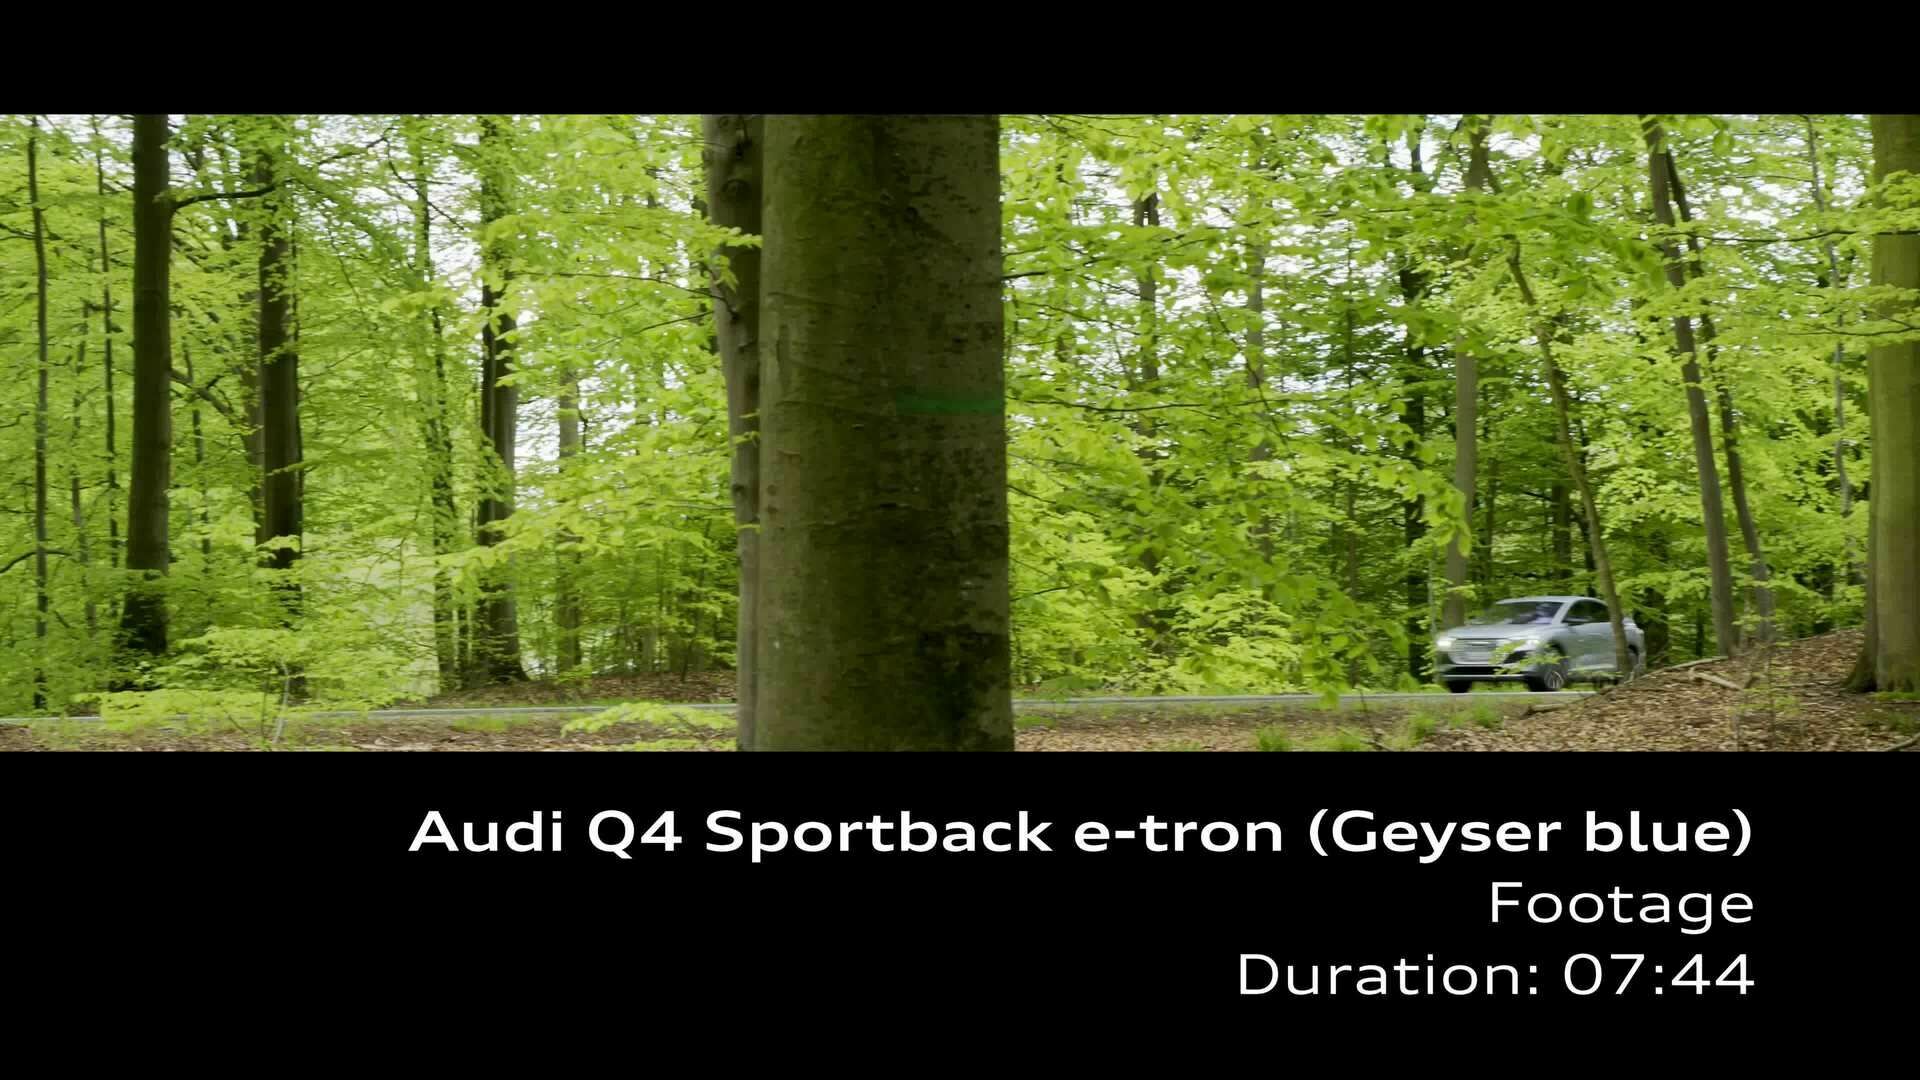 Footage: Audi Q4 Sportback e-tron – Geysirblau